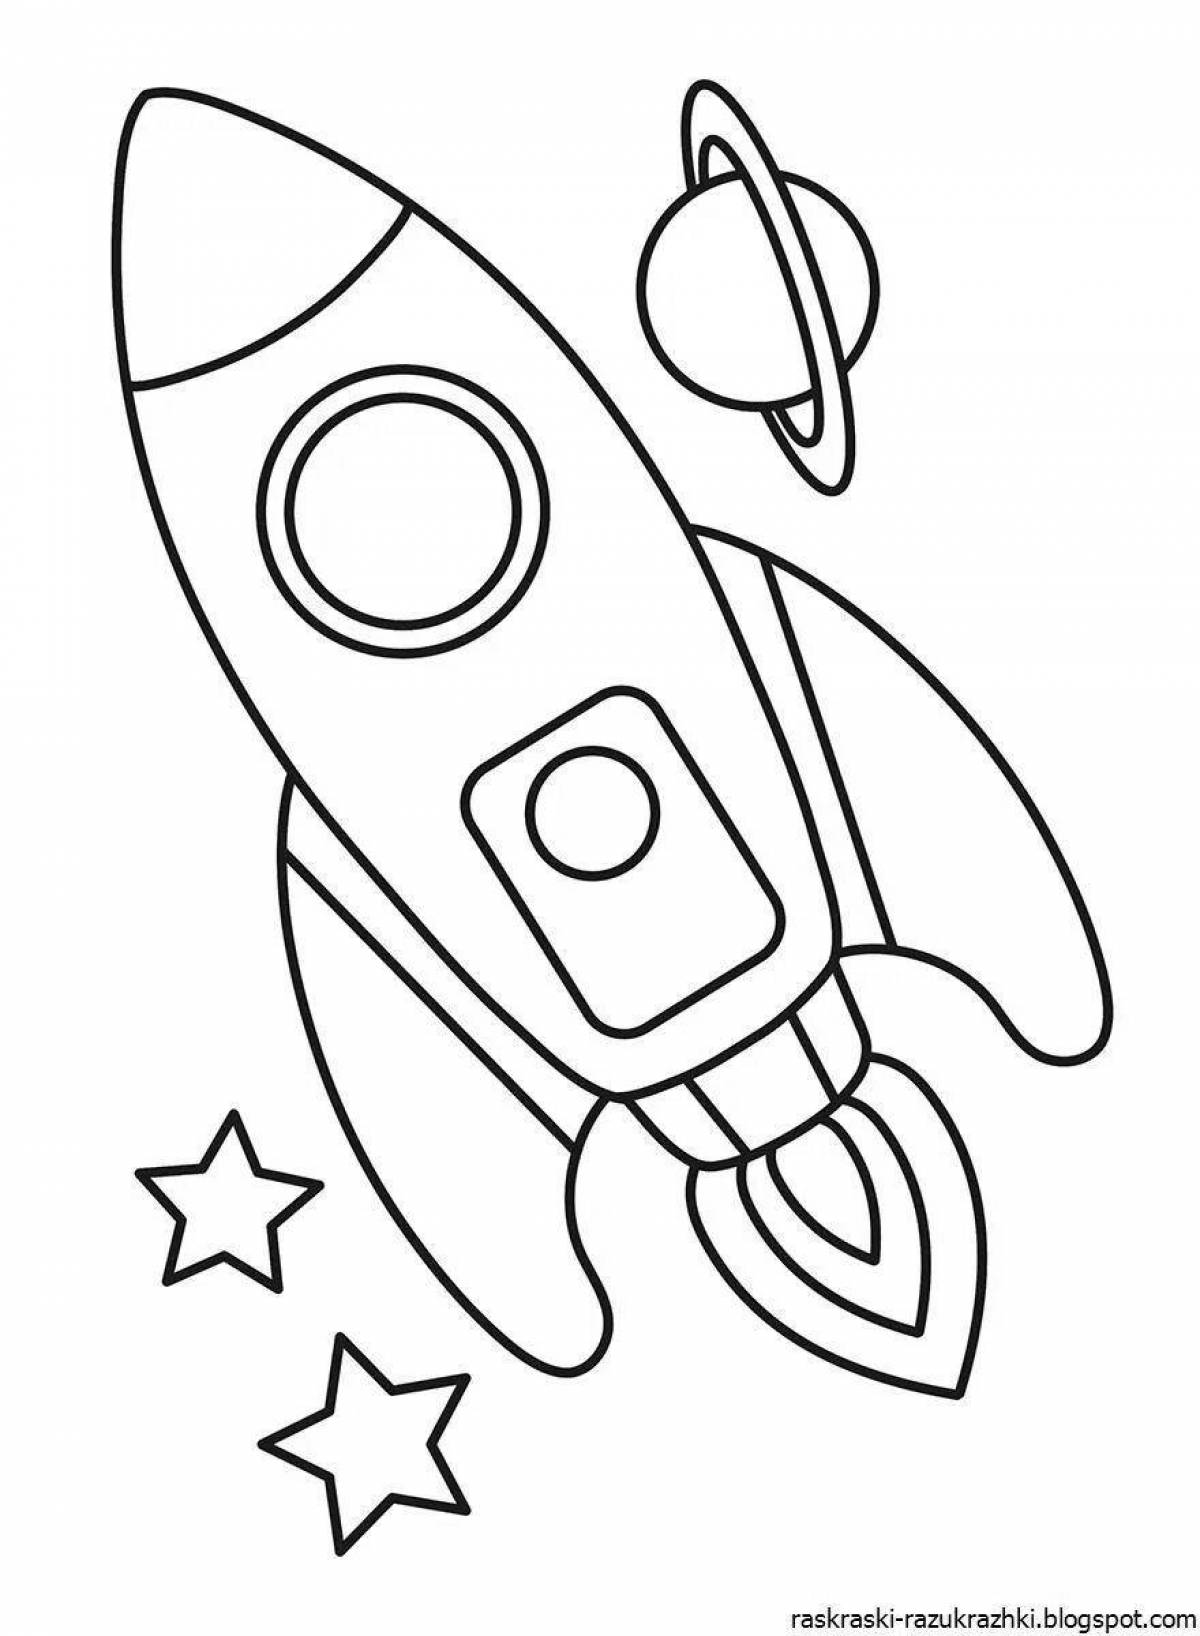 Космос раскраска для детей 3 4 лет. Ракета раскраска. Космос раскраска для детей. Ракета раскраска для детей. Раскраска ракета для детей 3-4 лет.